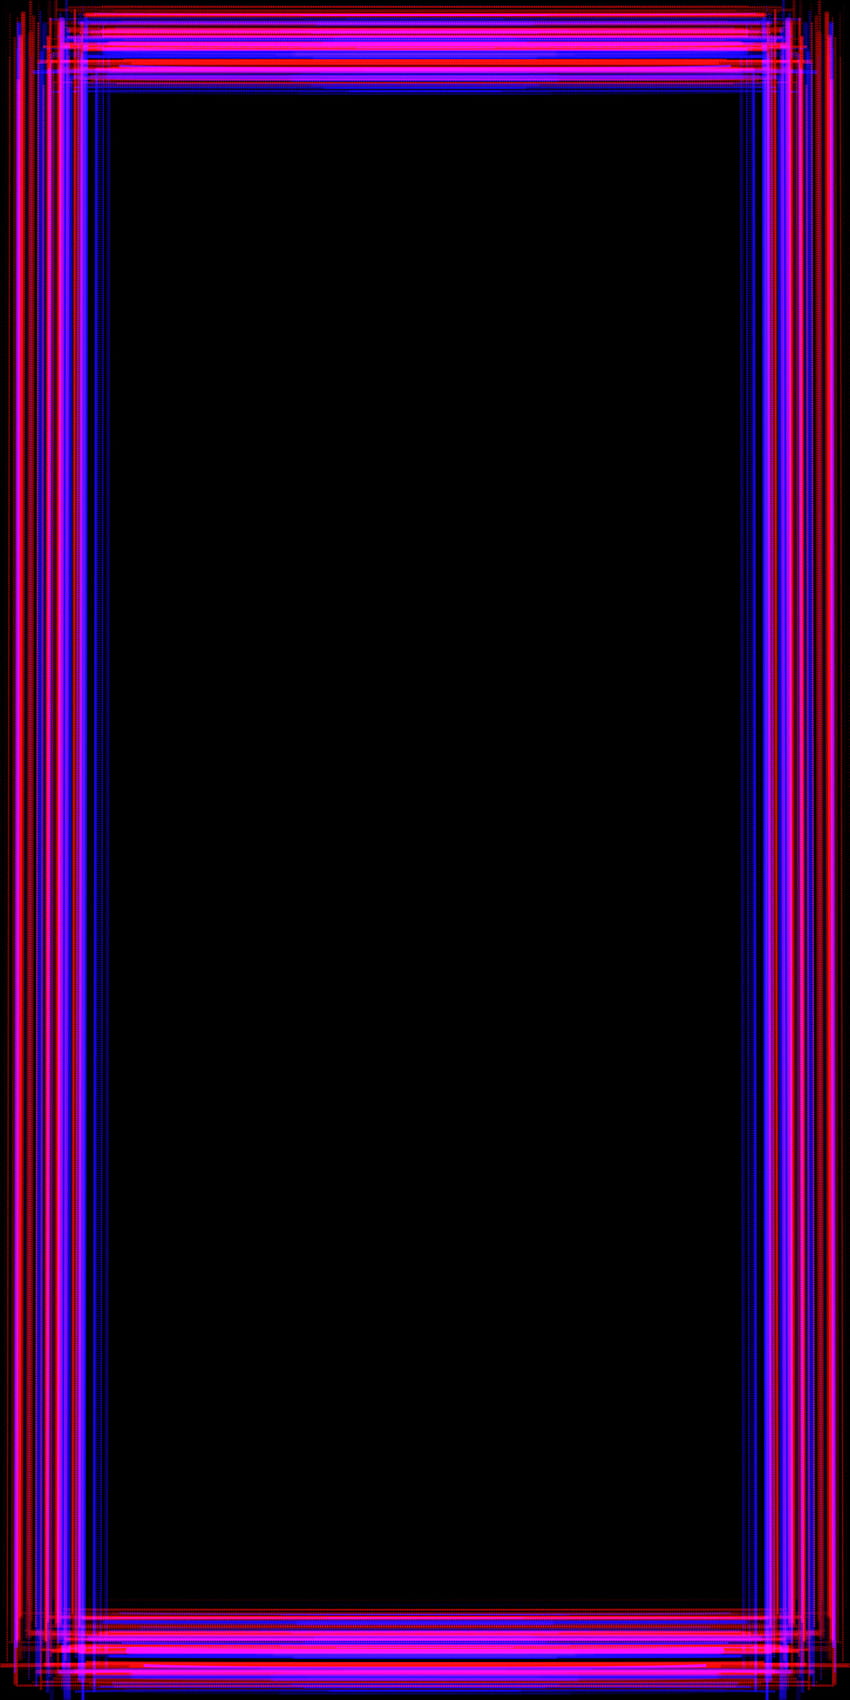 Ein weiterer Neonrahmen, Rand, fantastisch, minimal, primäre_Farben, cool, schwarz, blau_und_rot, einfach, lustig HD-Handy-Hintergrundbild